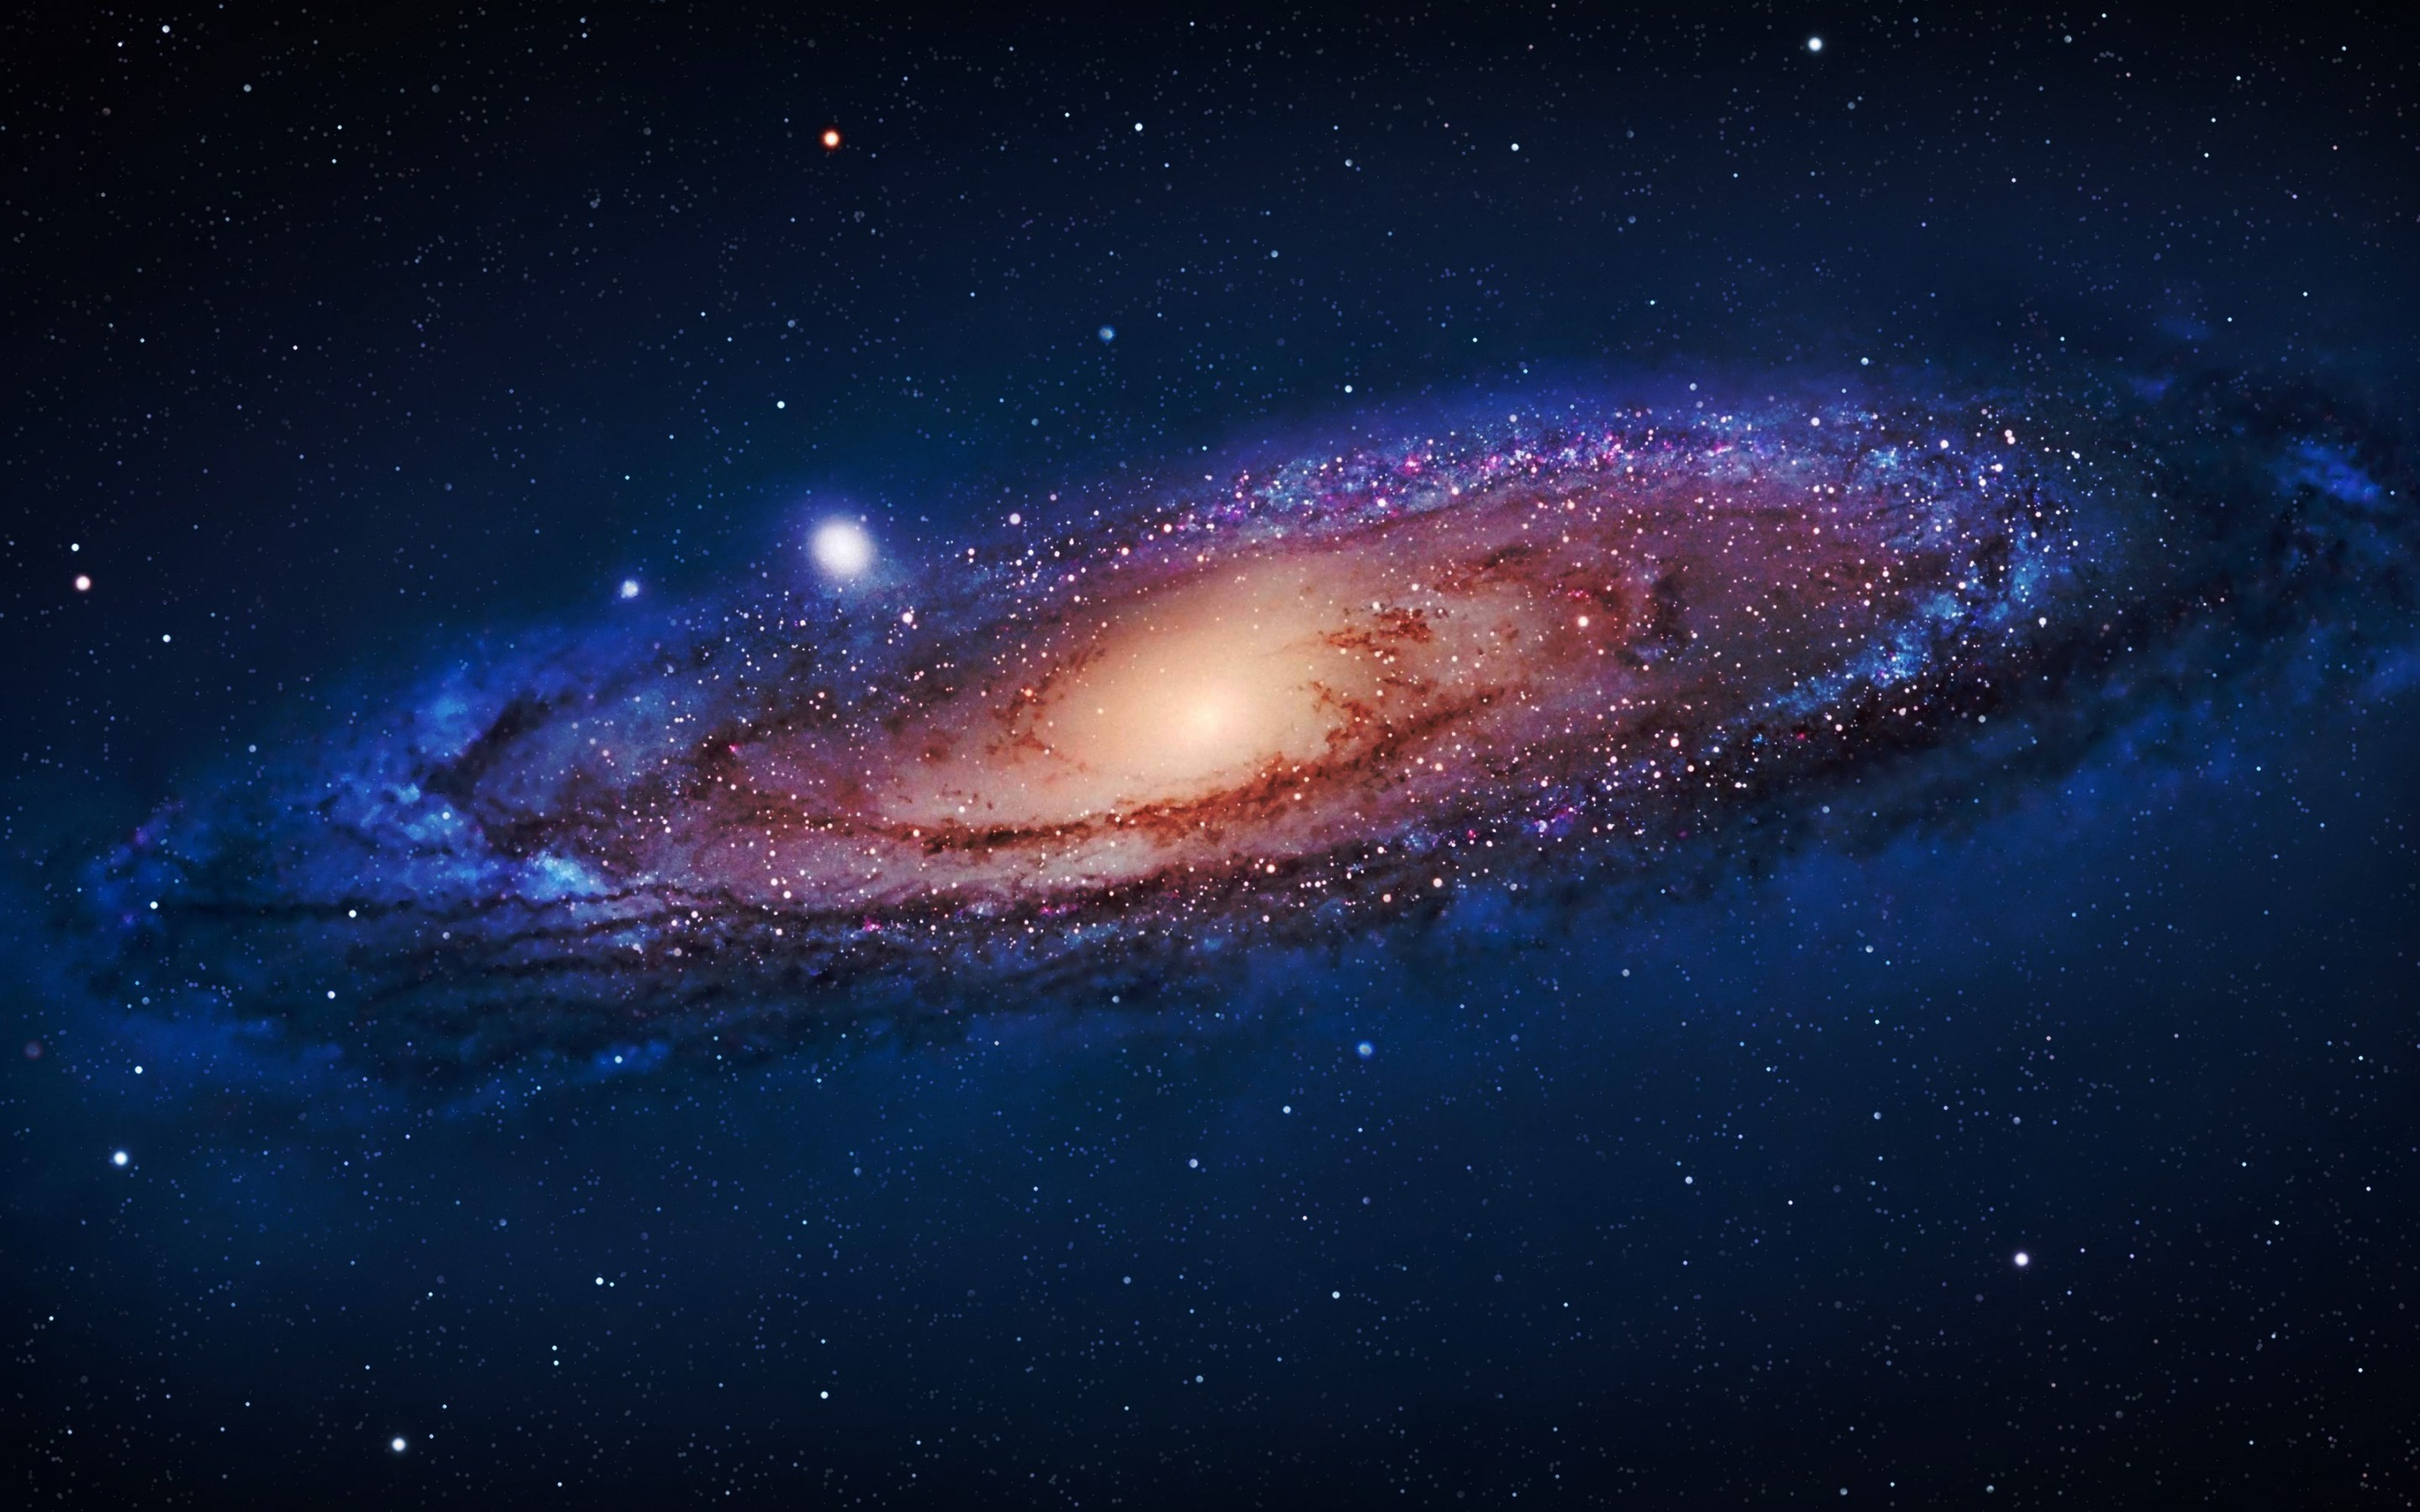 Không gian dải sao đầy bí ẩn và huyền bí. Và giờ đây, bạn có thể mang vẻ đẹp này vào máy tính của mình bằng hình nền độ phân giải cao với chất lượng hình ảnh tuyệt vời. Hàng triệu ngôi sao và chi tiết vũ trụ được hiển thị với độ sắc nét xuất sắc, mang đến cho bạn trải nghiệm đích thực của cuộc hành trình vượt qua các vì sao.